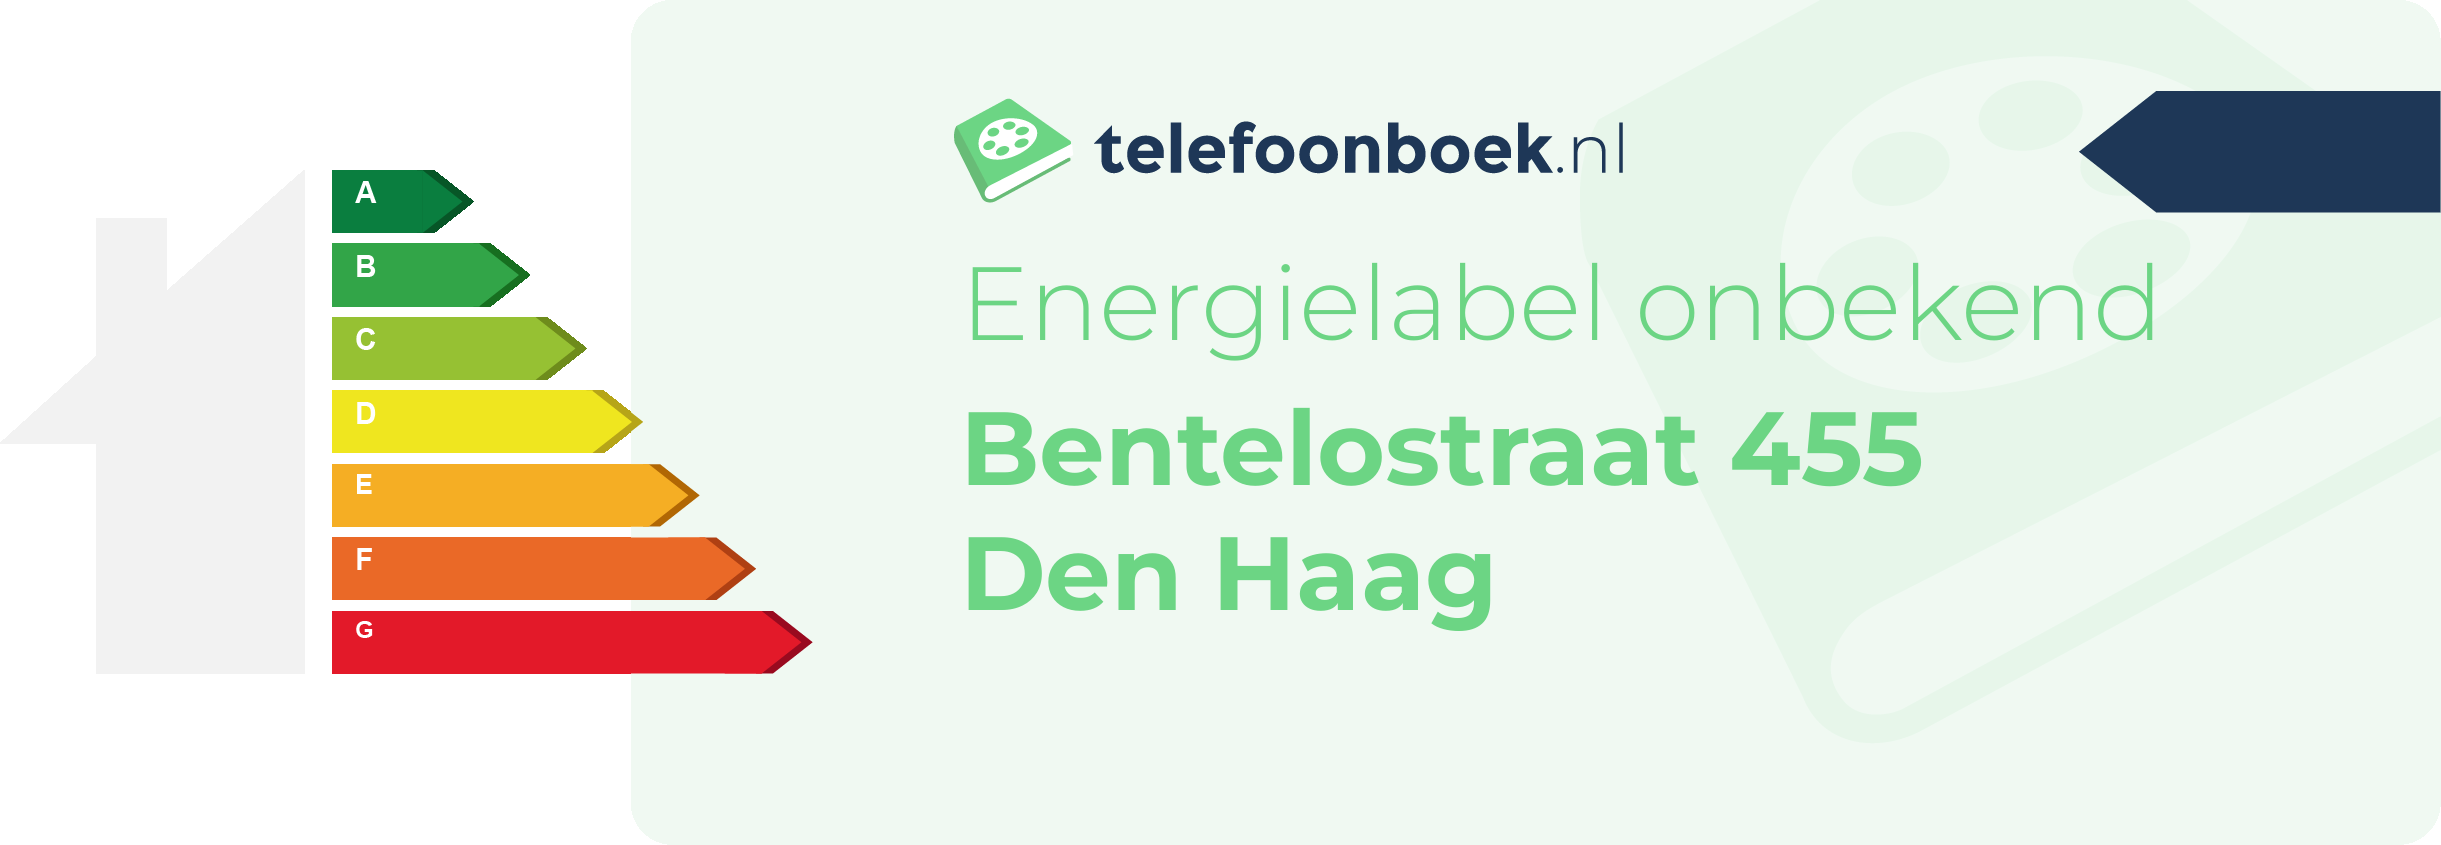 Energielabel Bentelostraat 455 Den Haag